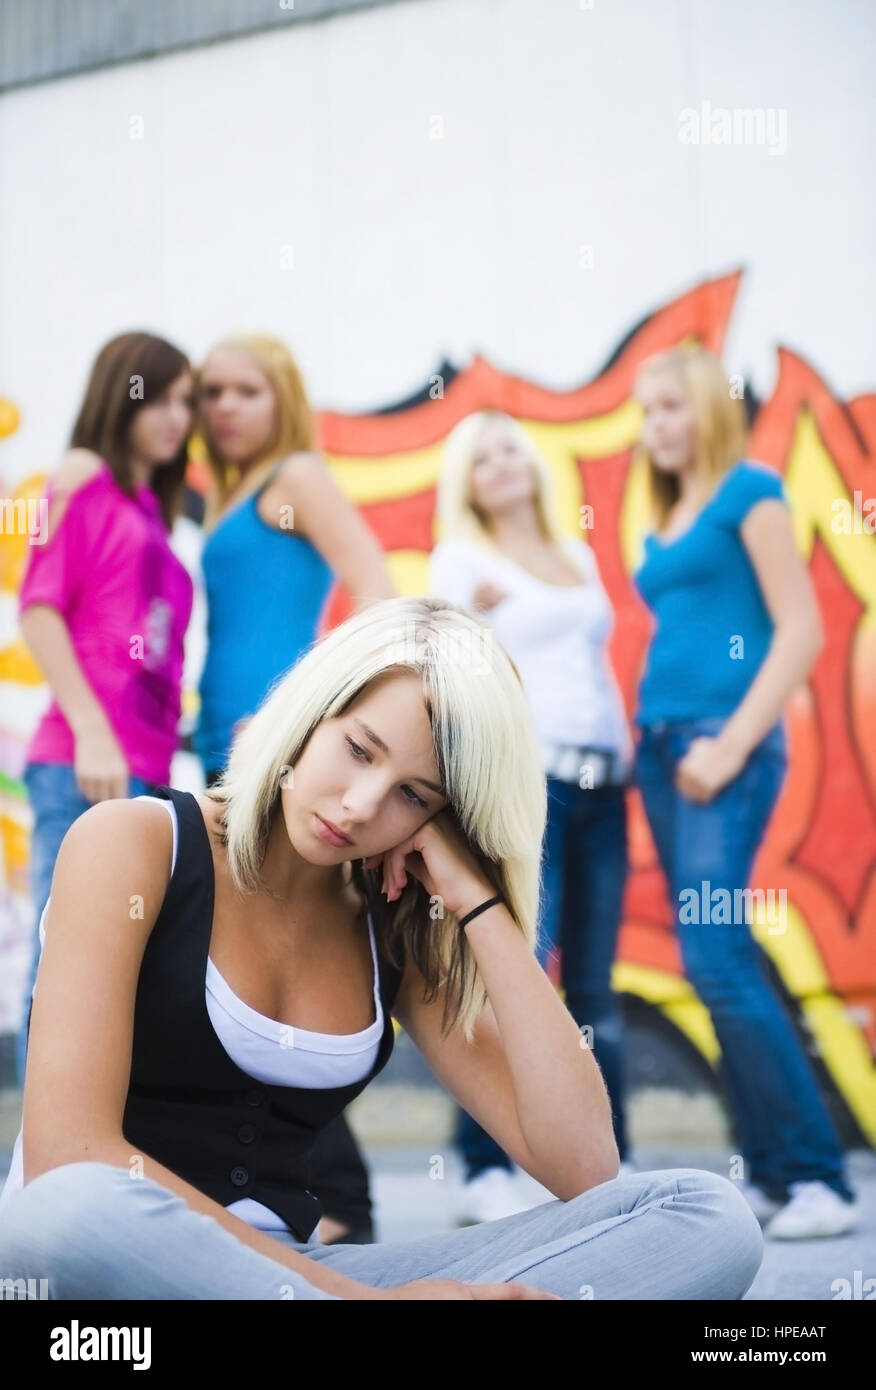 Model released , Jugendliches Maedchen wird von Gleichaltrigen gemobbt - teenager mobbing Stock Photo